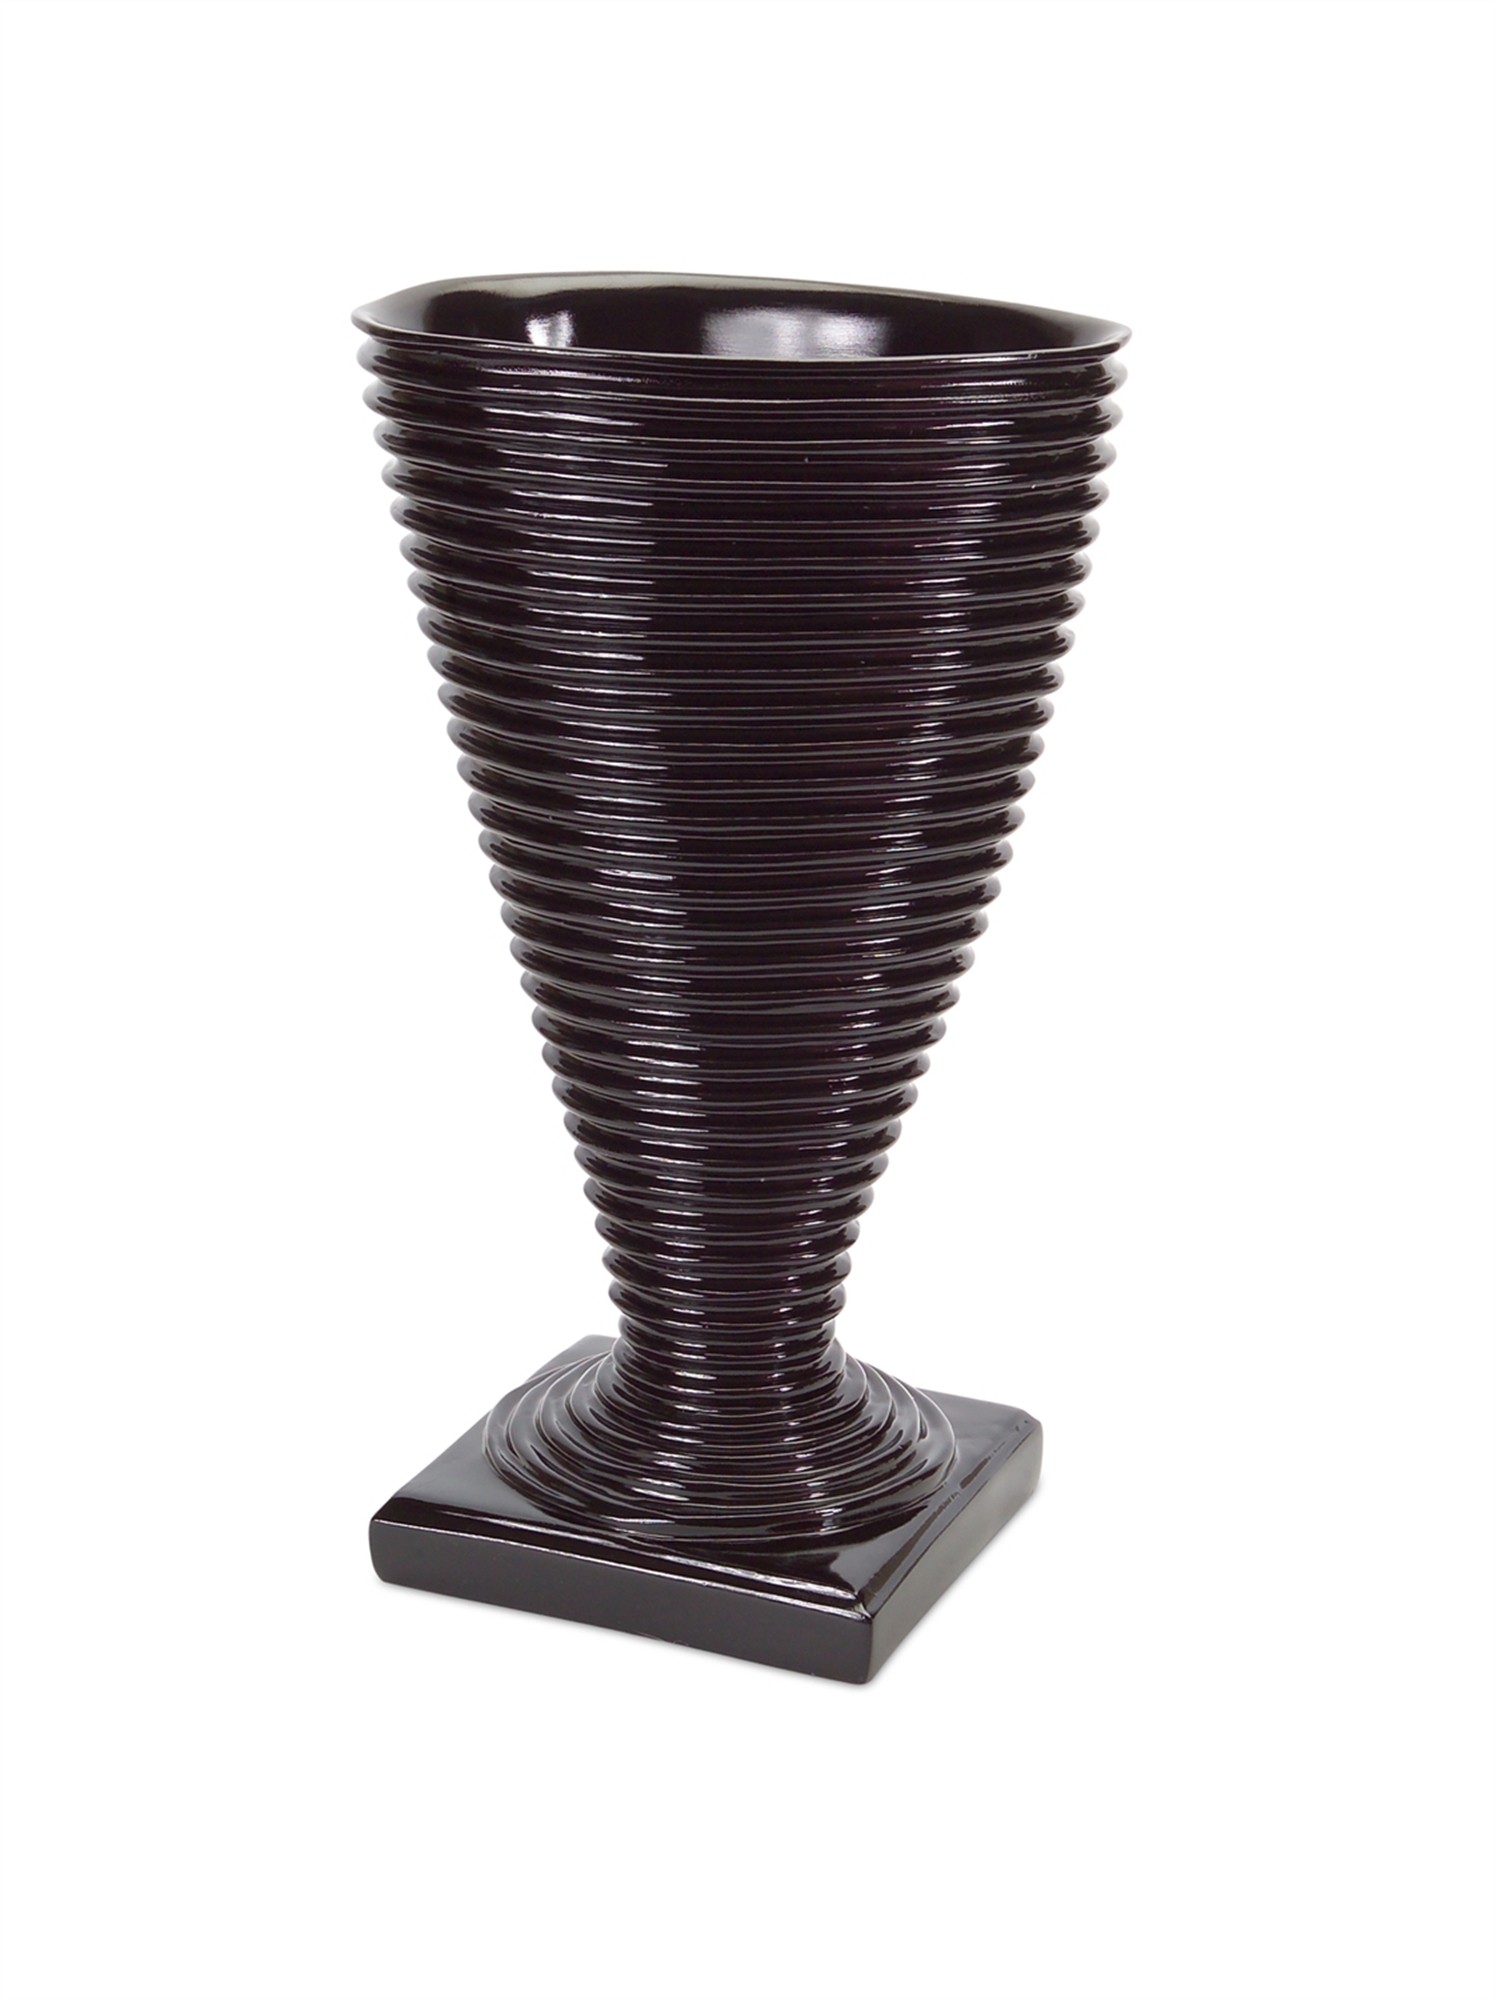 Decorative Vase 14"H Polyresin